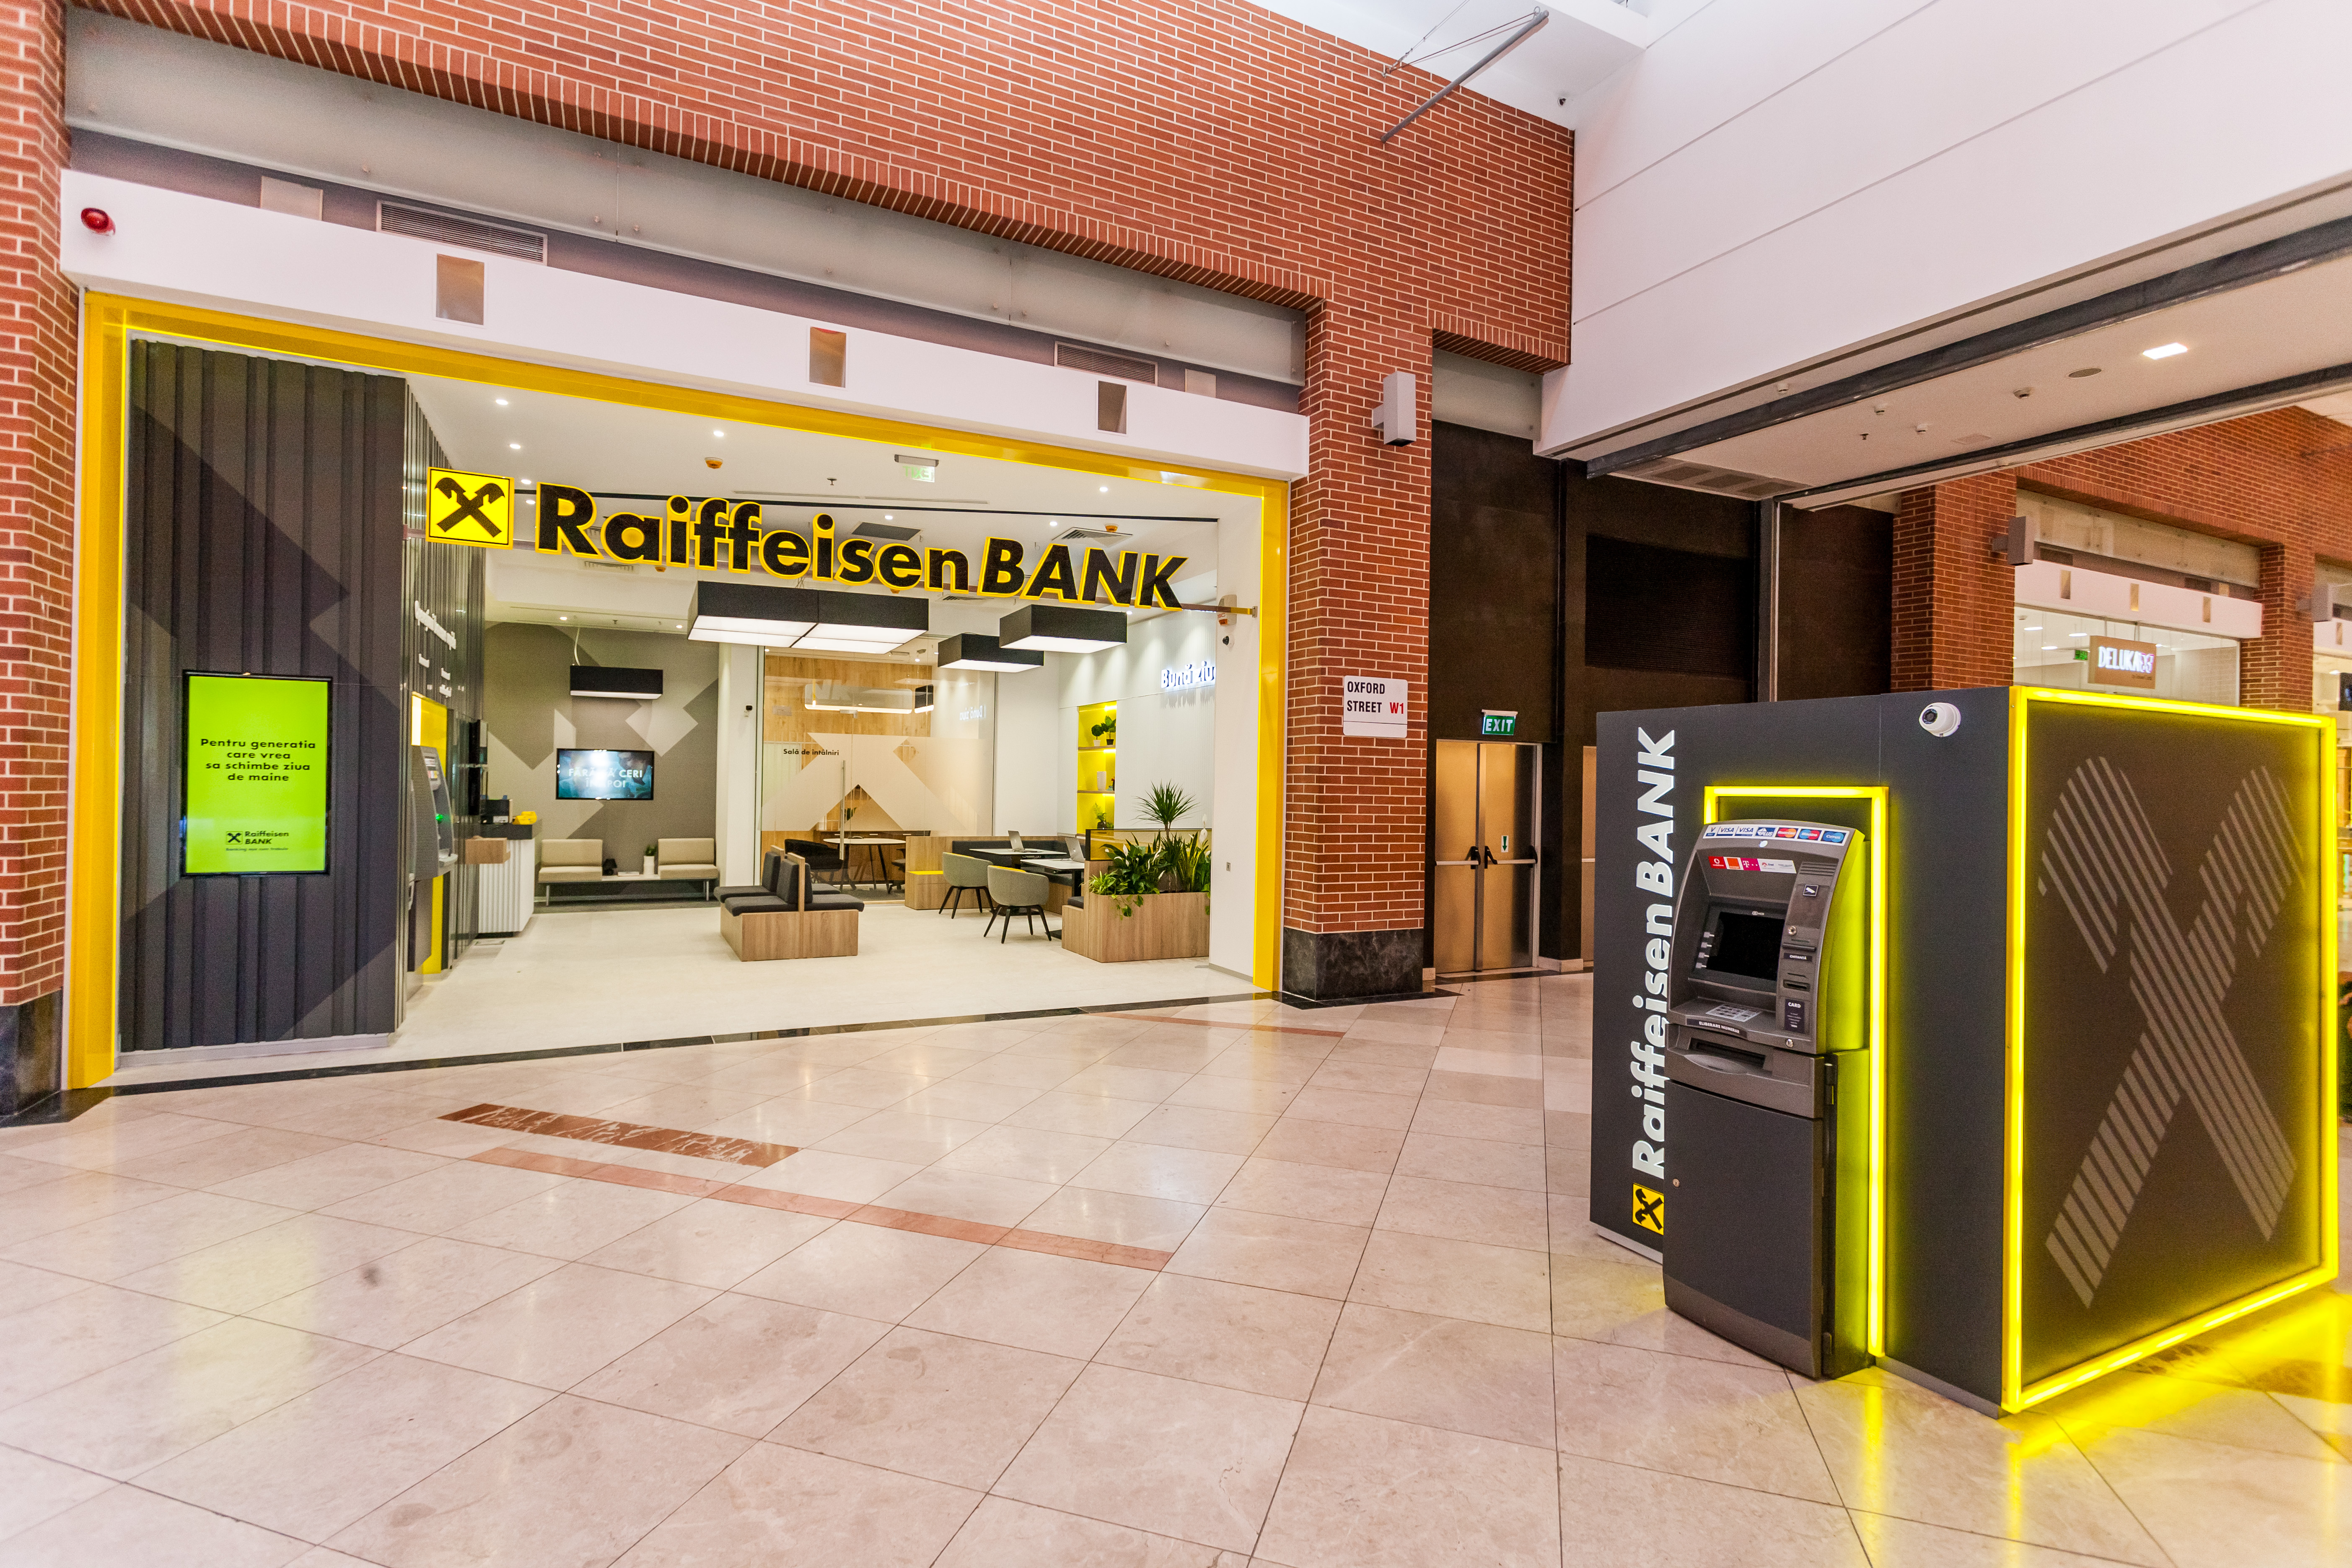 Raiffeisen Bank face primul pas spre generaţia viitoare de agenţii bancare